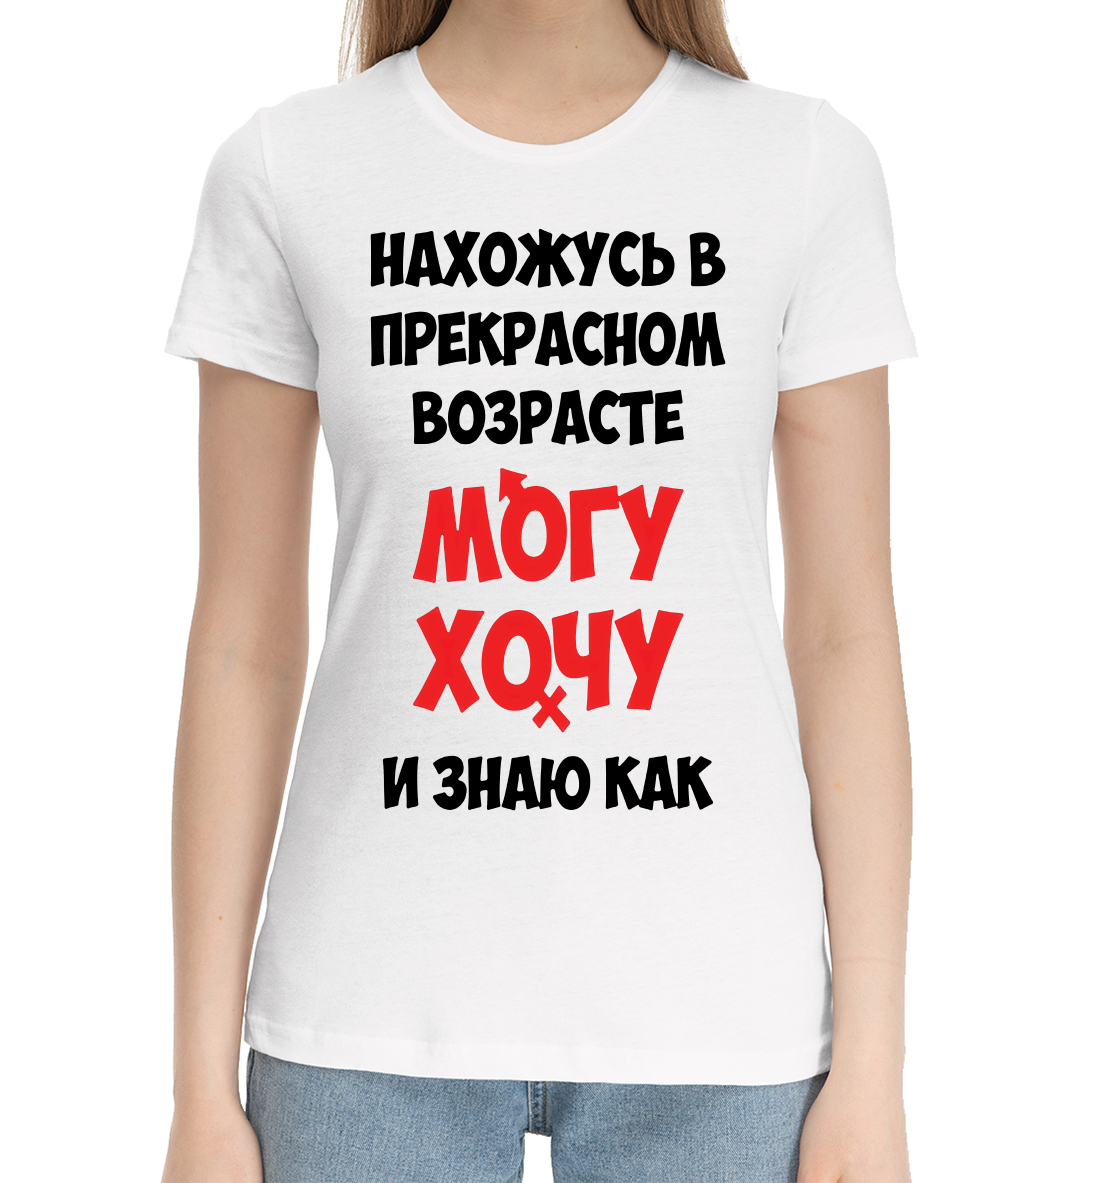 Женская Хлопковая футболка с надписью Нахожусь в прекрасном возрасте могу хочу и знаю как, артикул NDP-870186-hfu-1mp